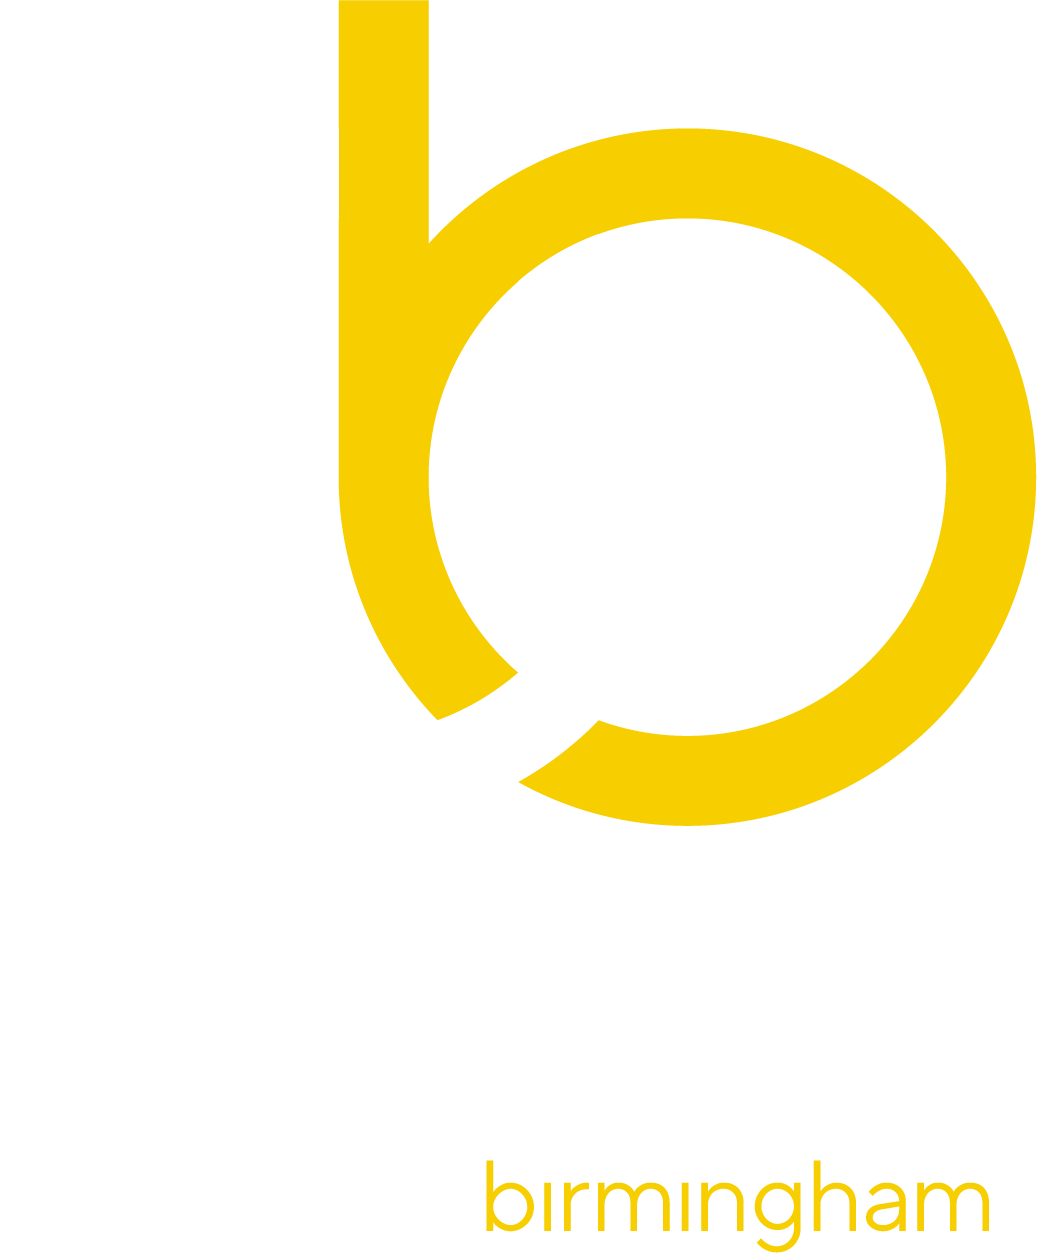 Peddimore Birmingham Logo